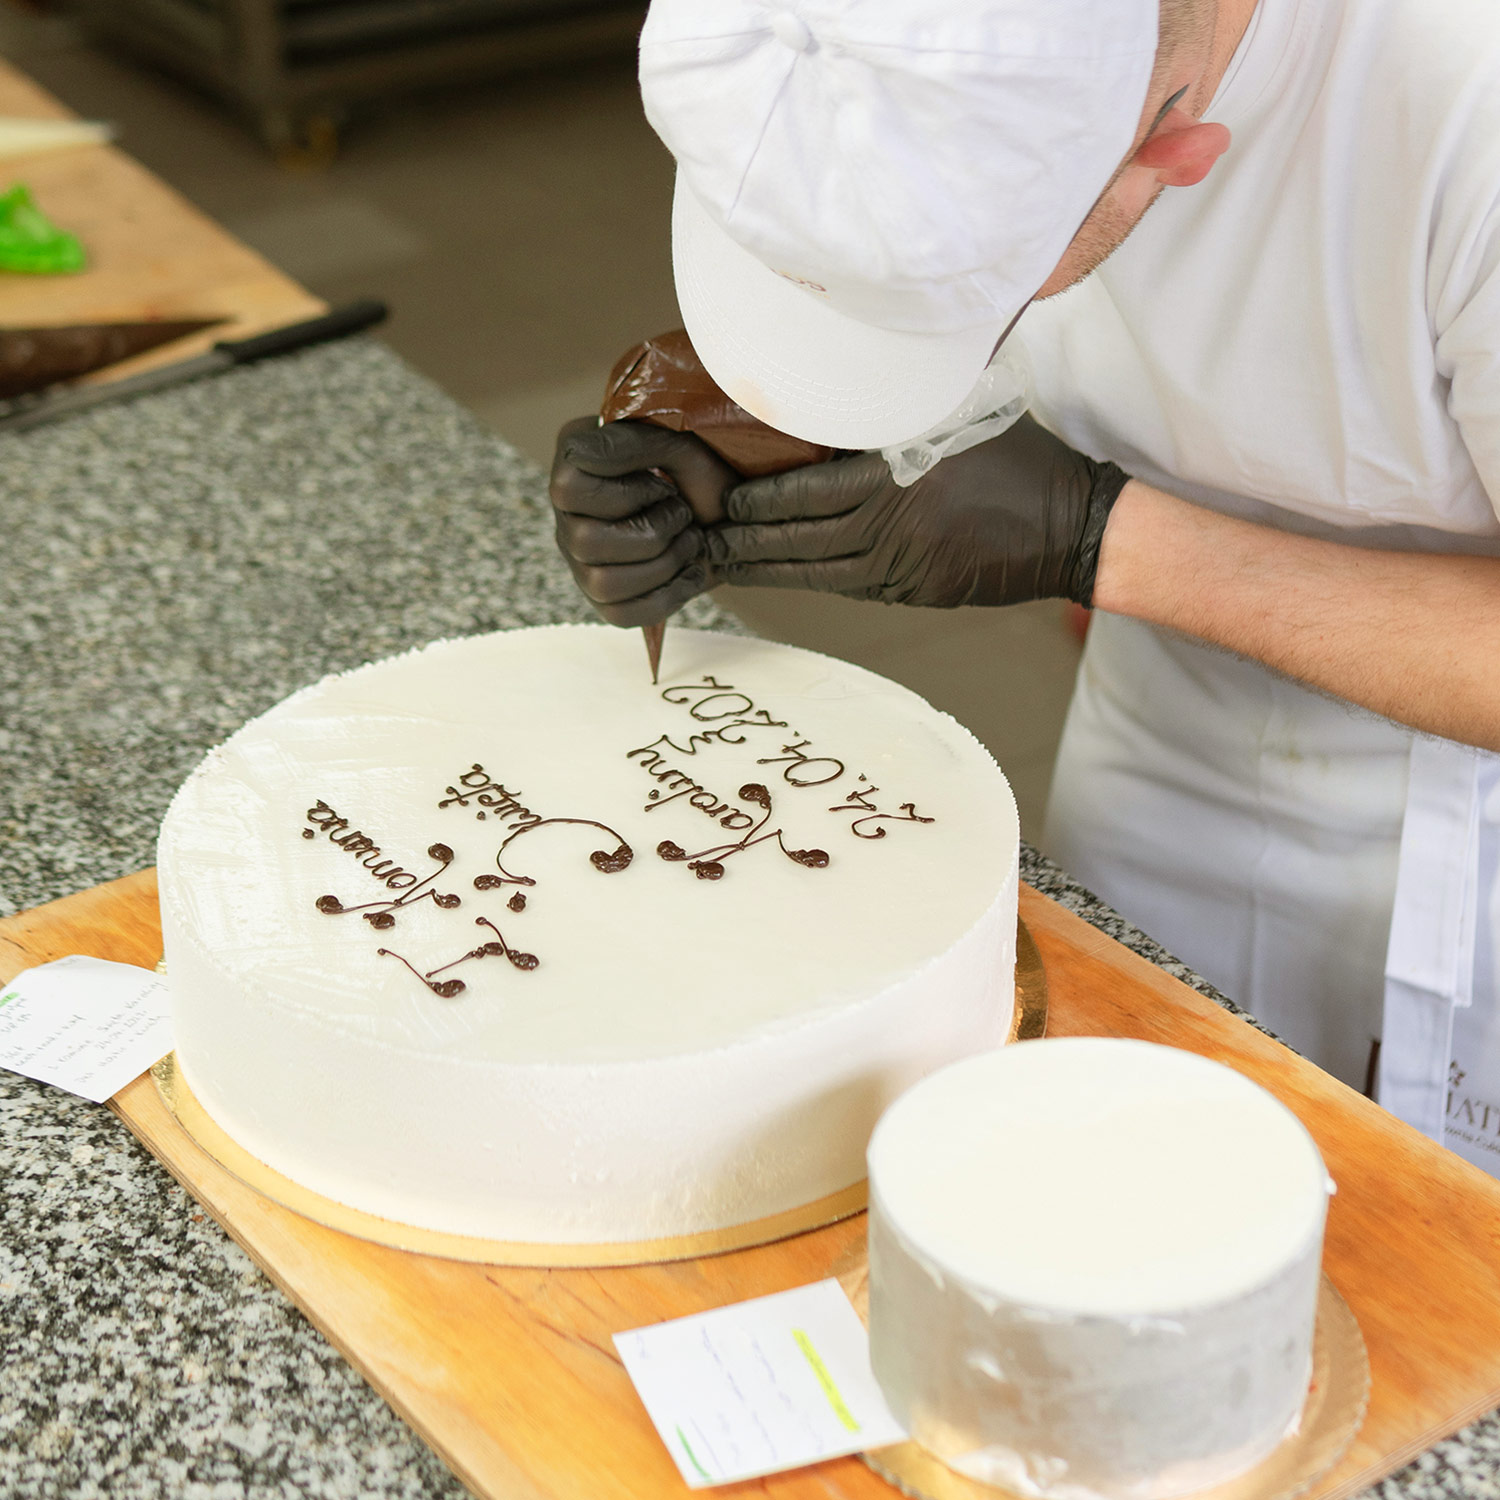 Pracownik Cukierni Kwiatek przygotowujący i podpisujący tort czekoladową polewą.